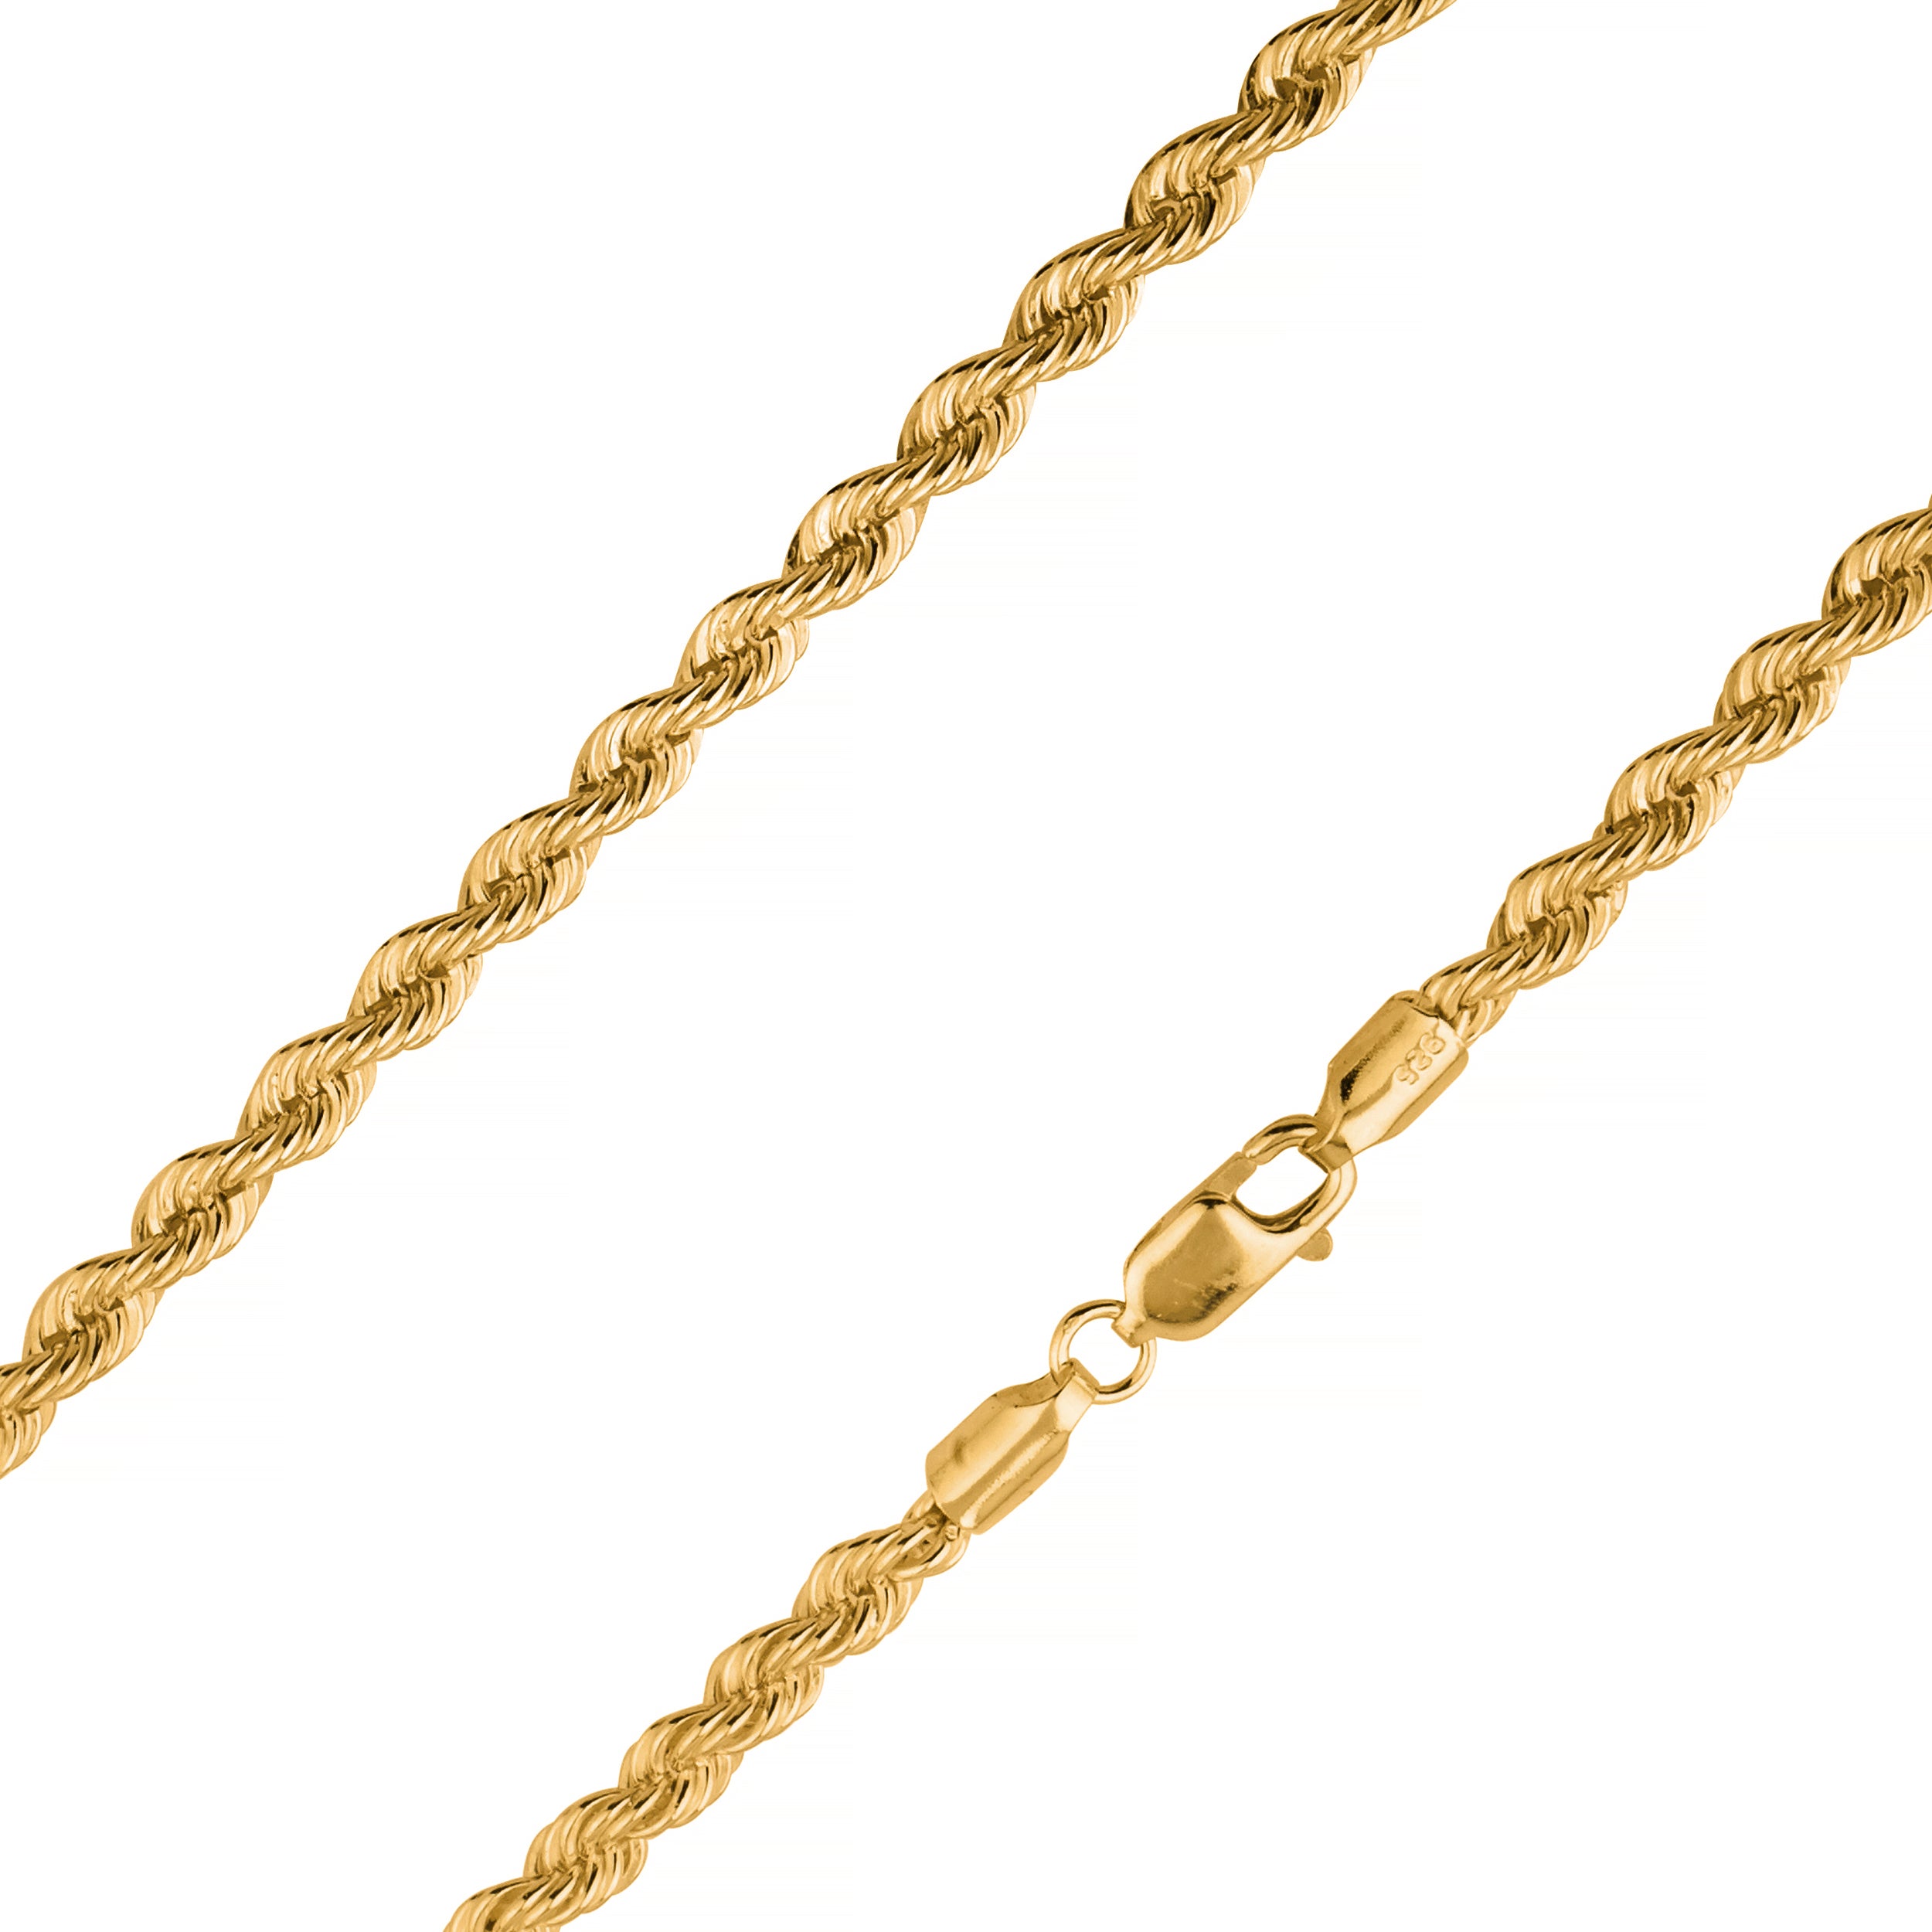 日本正規流通品 Solid 925 Sterling Silver and Vermeil 2.5mm Diamond-cut Rope Chain  Necklace with Secure Lobster Lock Clasp 24